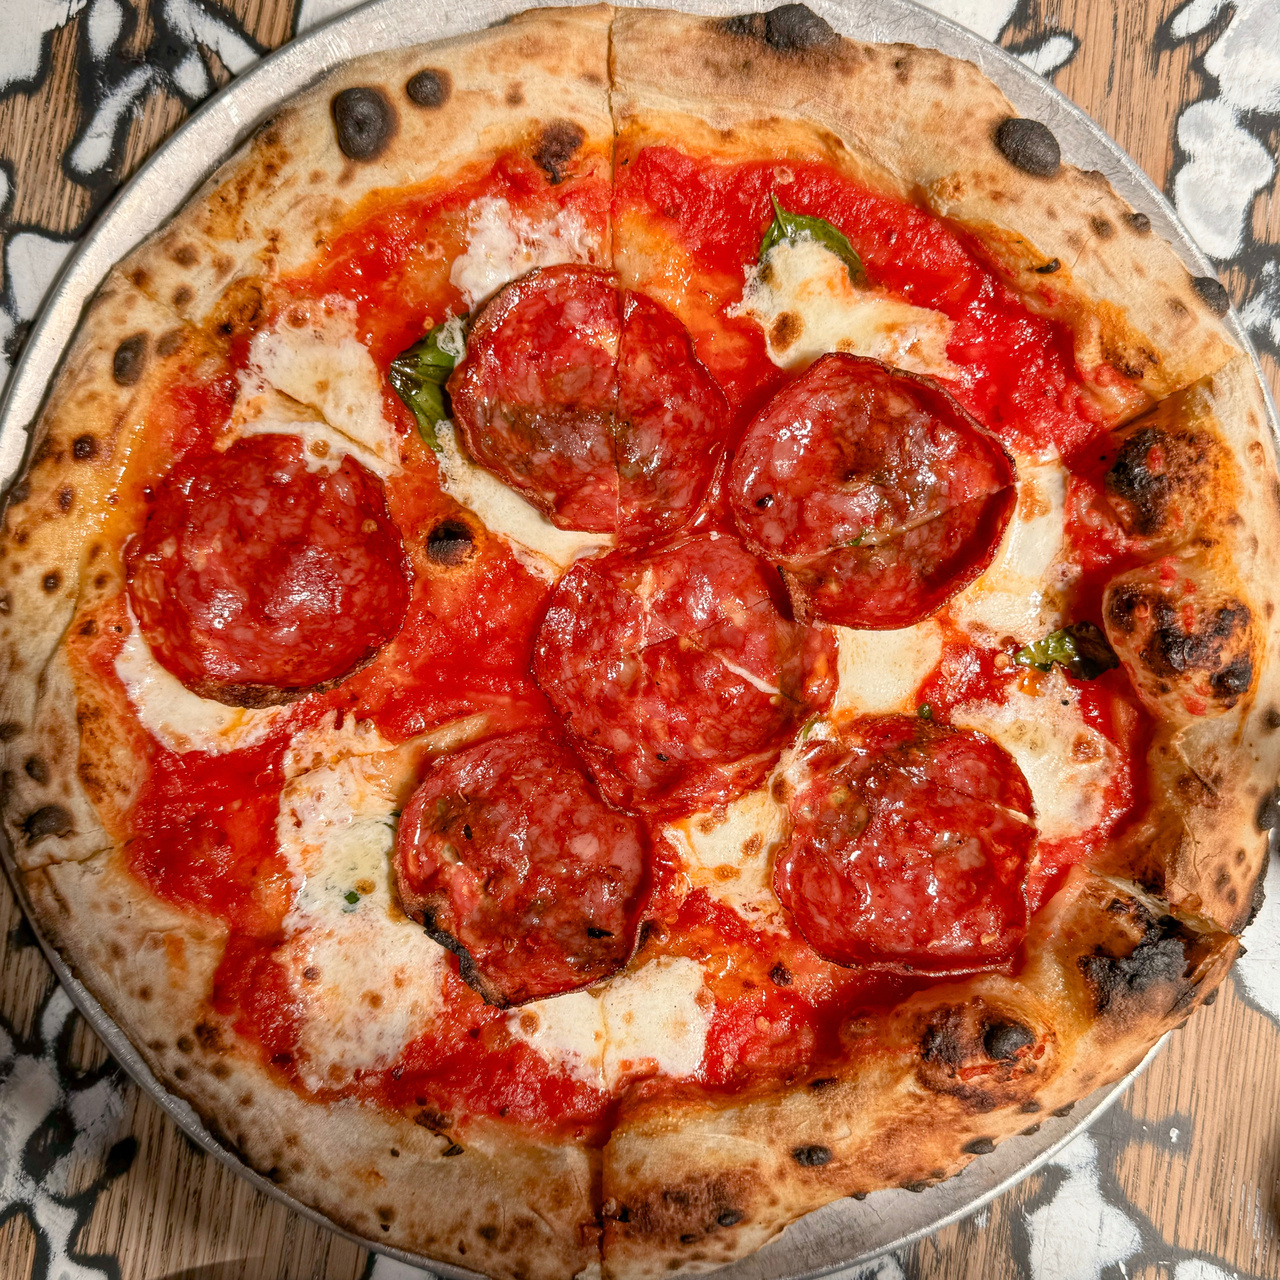 Bee Sting pizza with soppressata, mozzarella, and tomato sauce